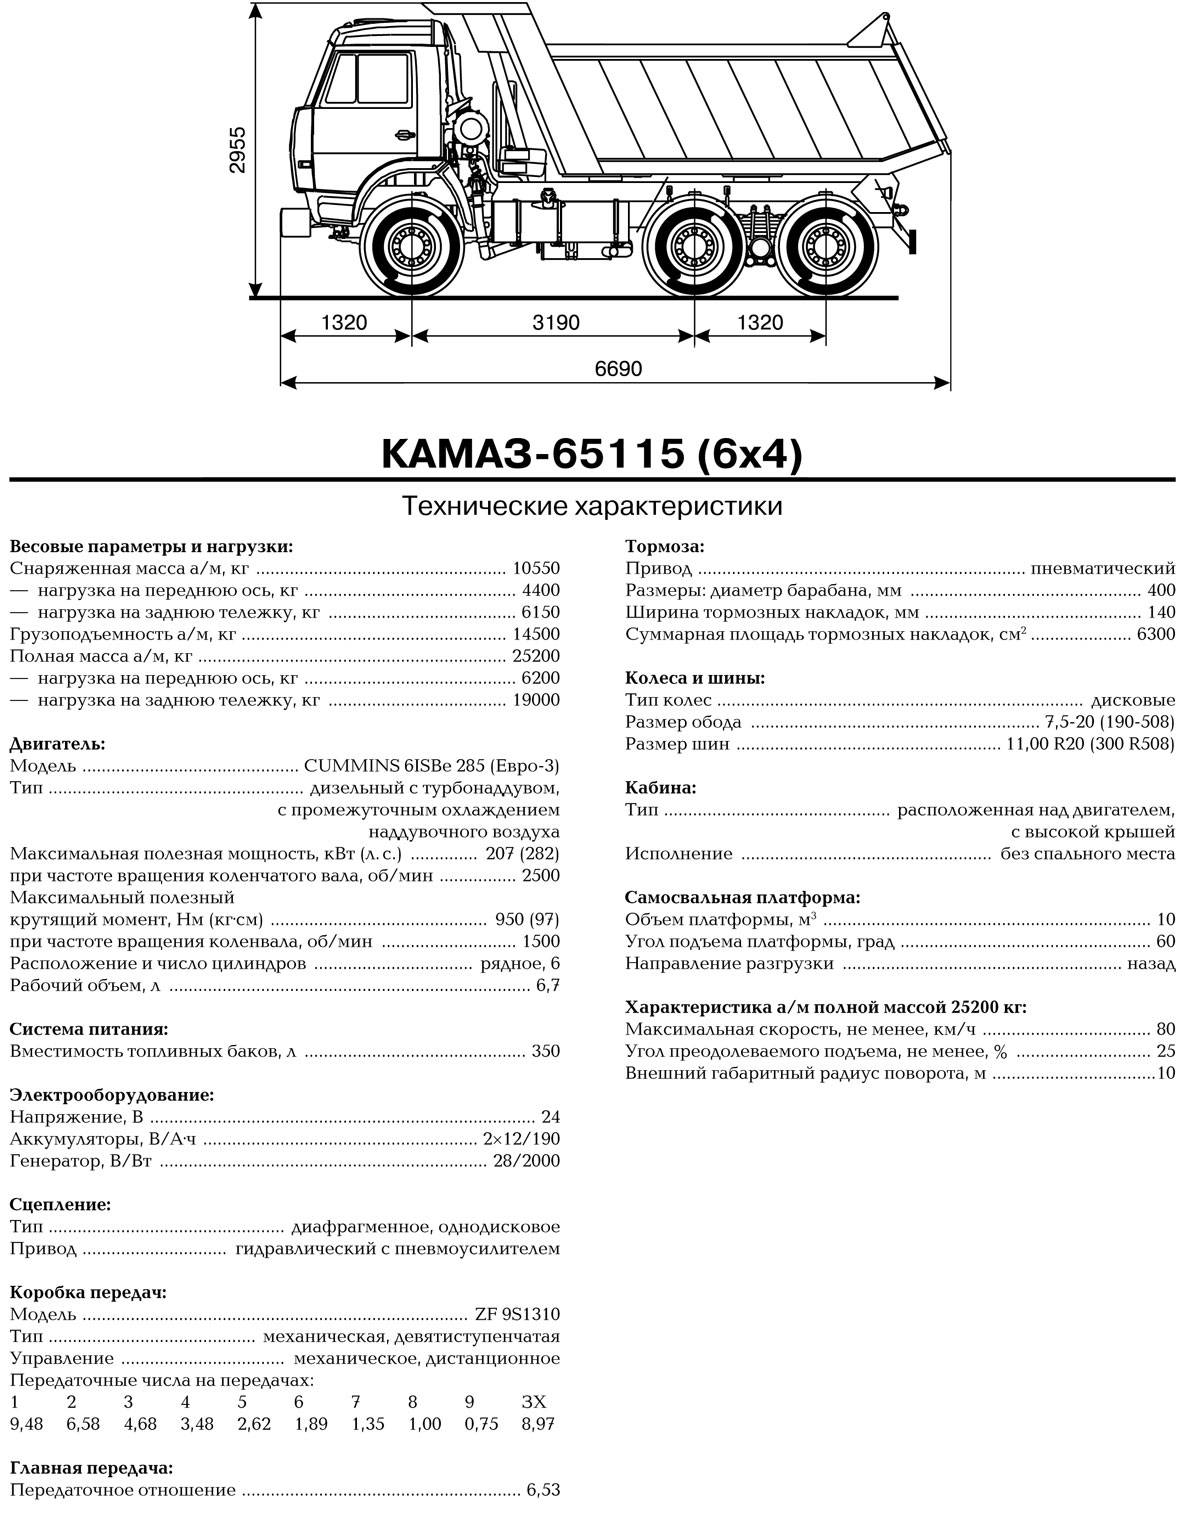 Камаз 65115 вес. КАМАЗ 65115 самосвал технические характеристики. КАМАЗ 65115 самосвал спецификация. ТТХ КАМАЗ 65115 самосвал. КАМАЗ 65115 технические характеристики технические.